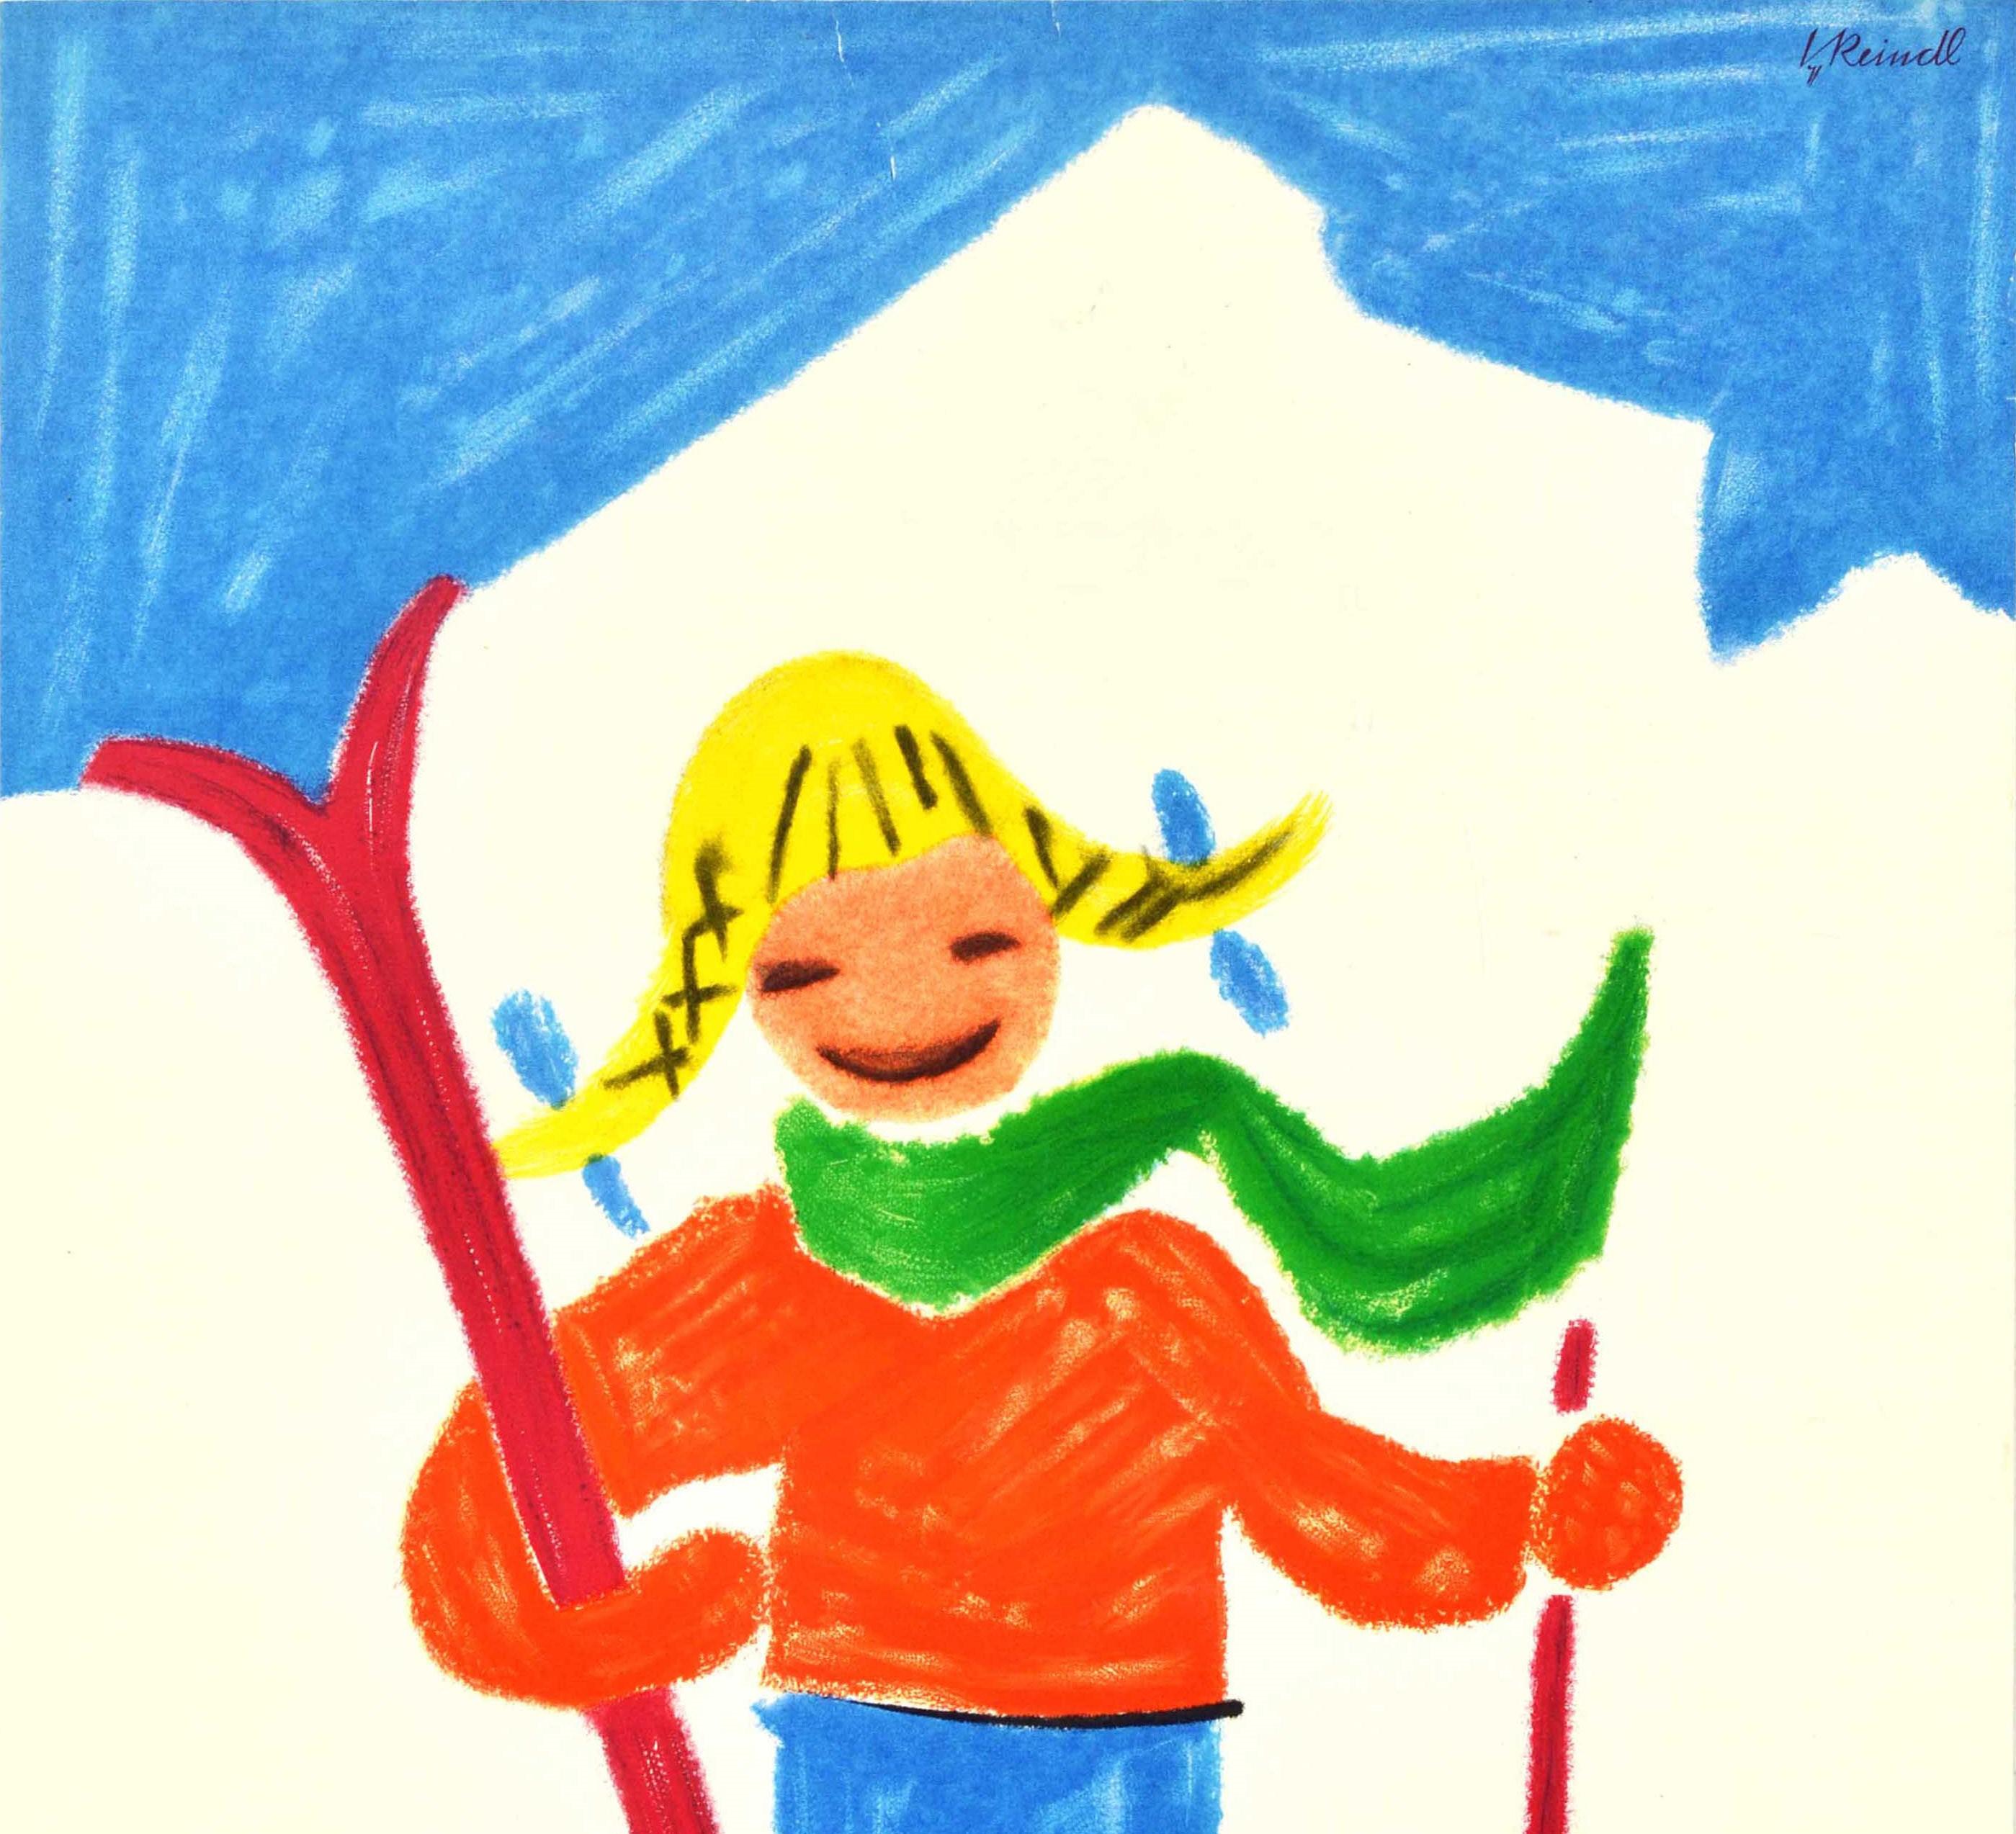 Affiche originale de sport d'hiver vintage pour la station de ski de Garmisch-Partenkirchen en Bavière, en Allemagne, avec une illustration colorée dans le style d'un dessin d'enfant montrant une fille souriante avec des rubans bleus dans ses